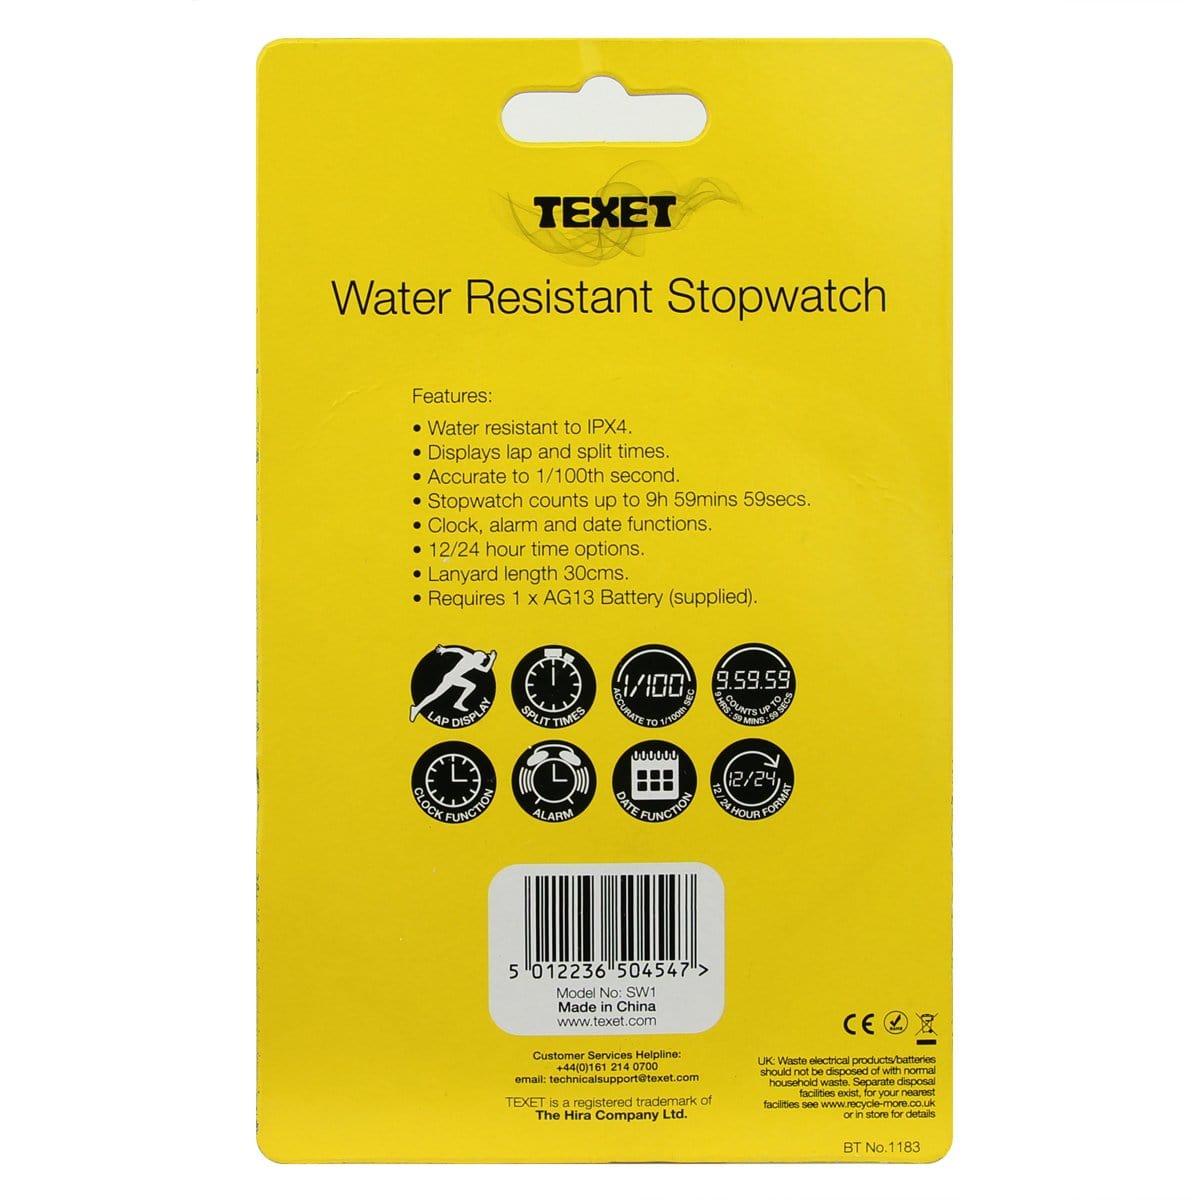 Water Resistant Stopwatch